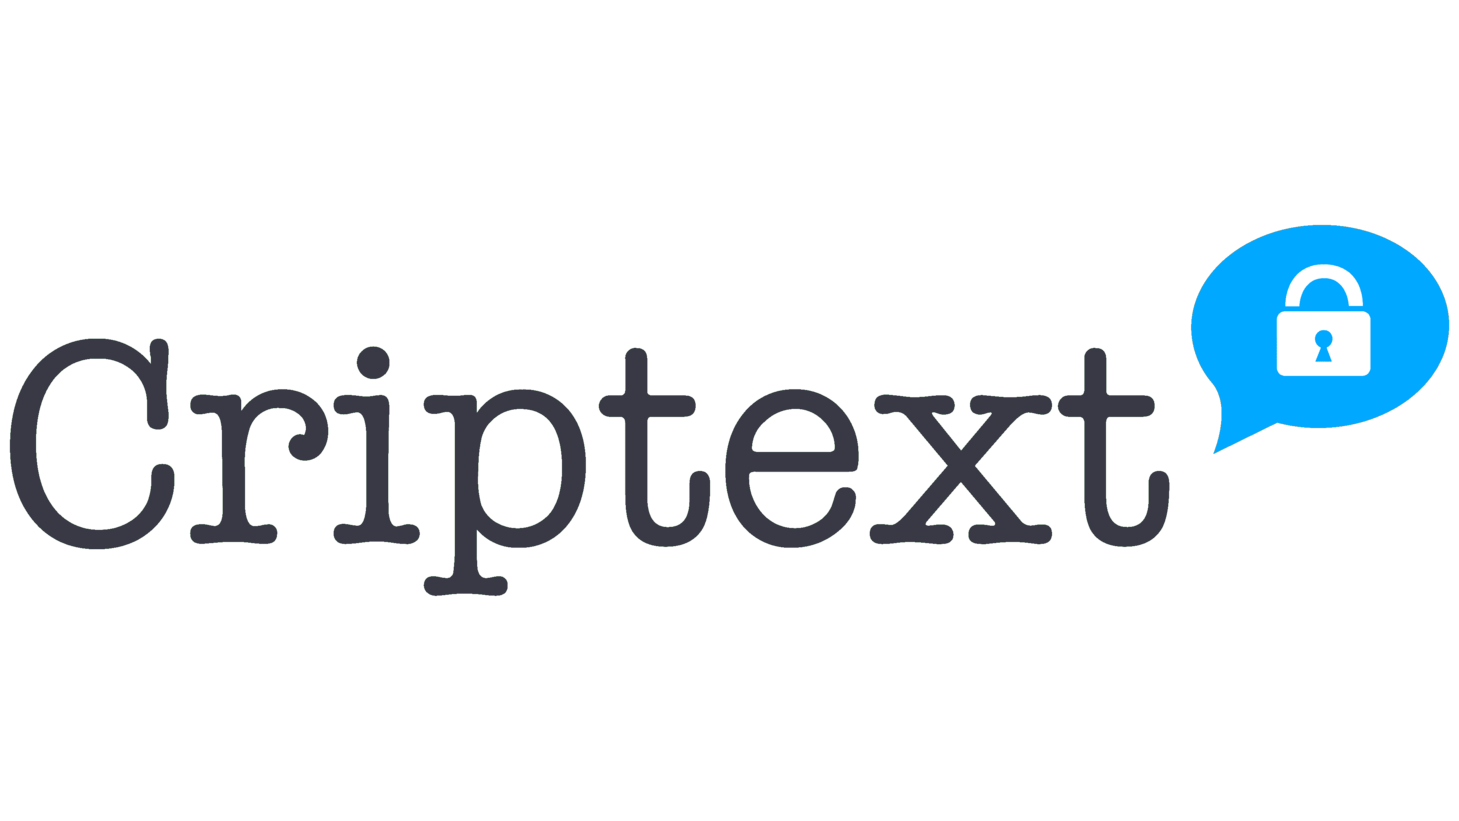 Criptext sign